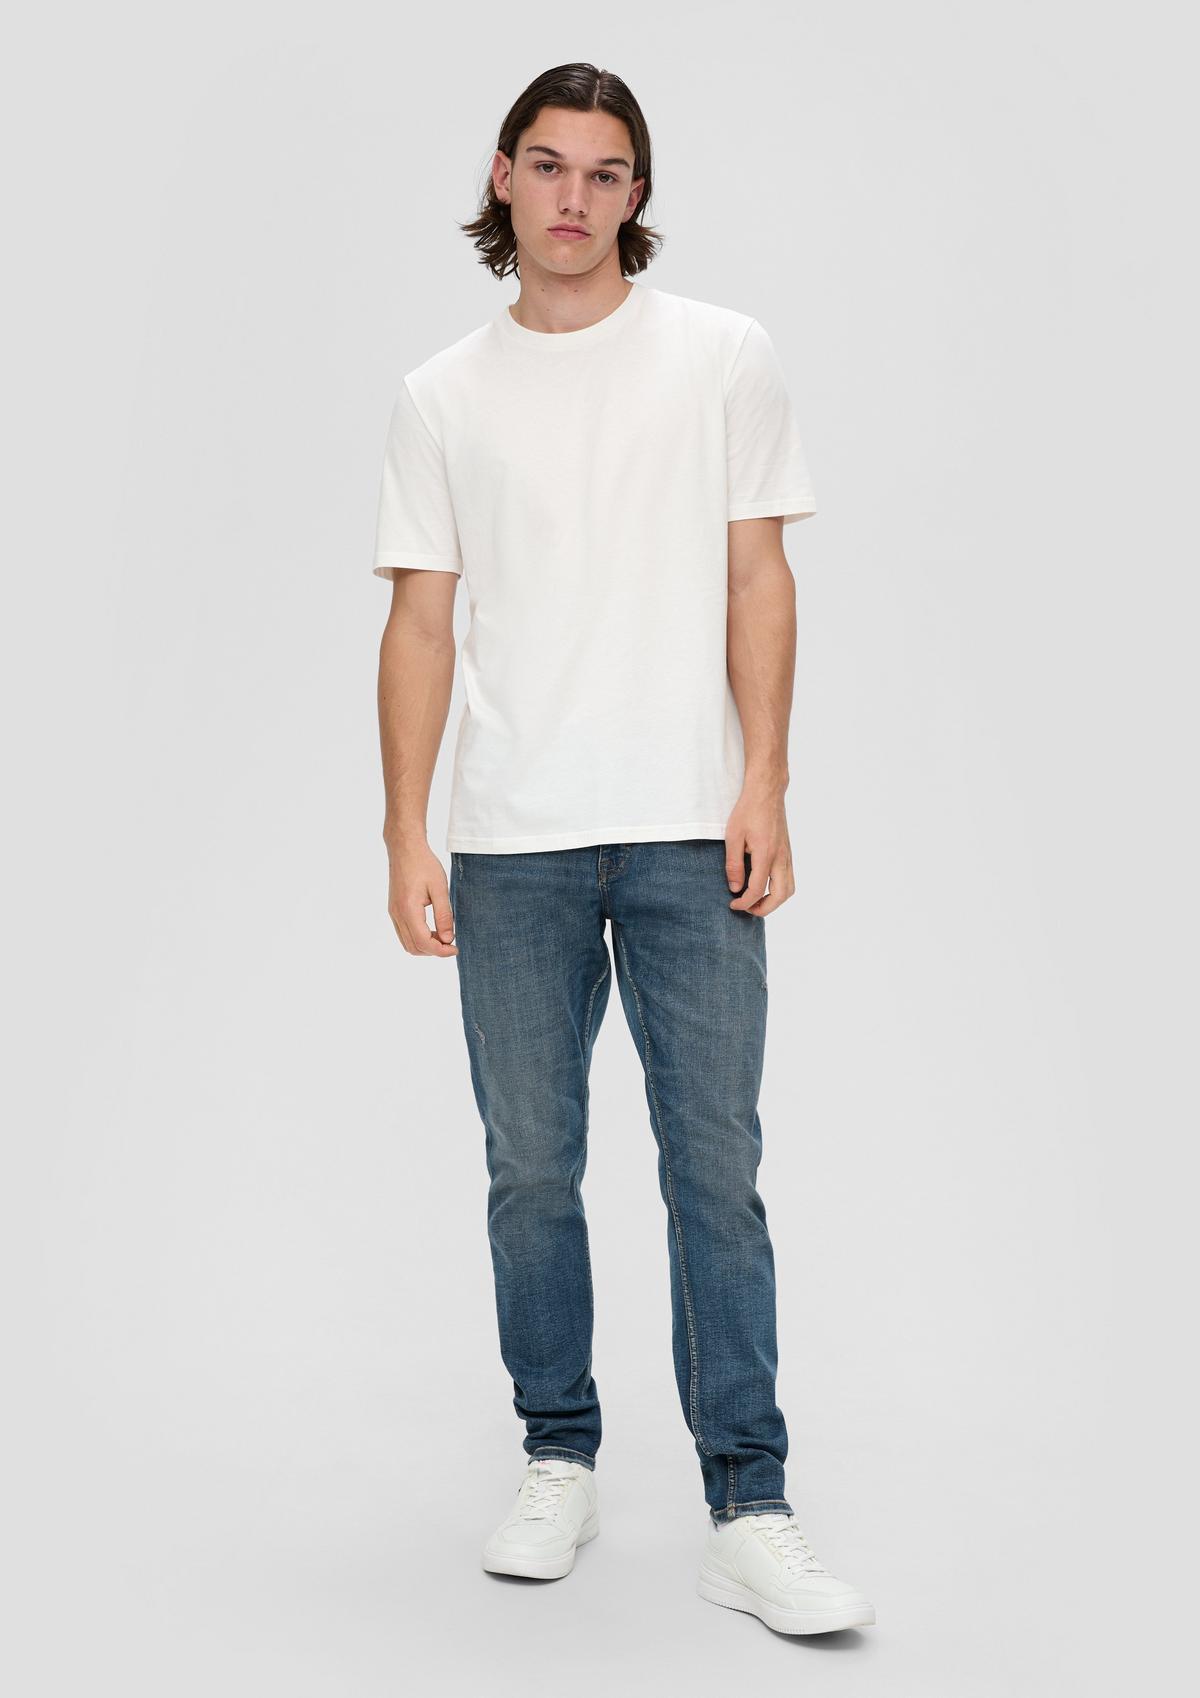 Jeans Shawn / regular fit / mid rise / slim leg